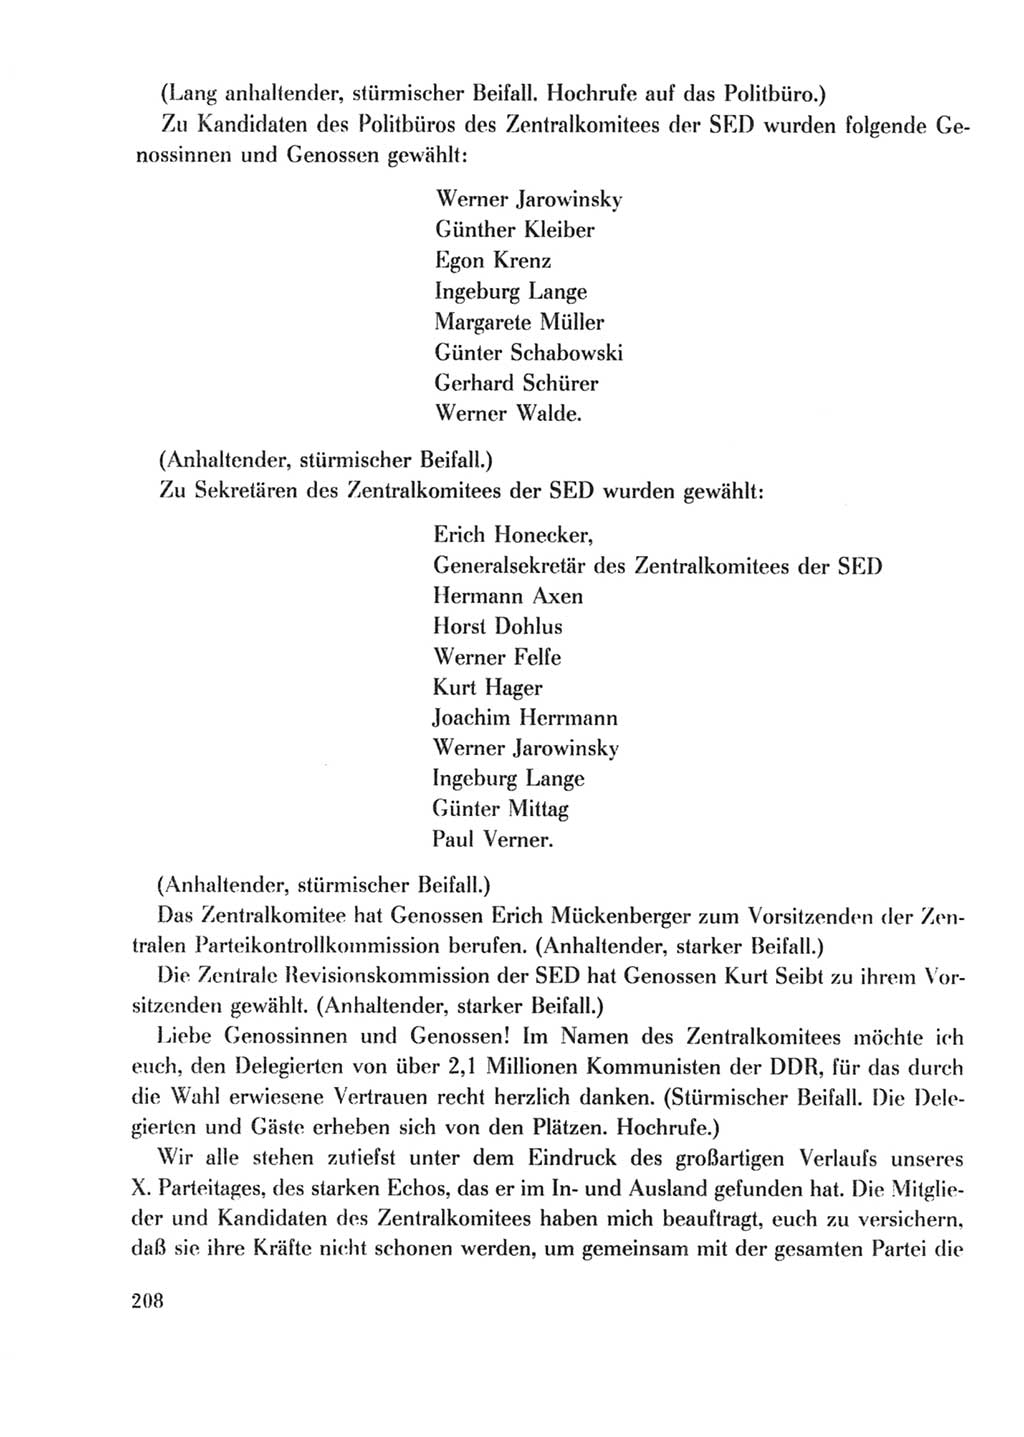 Protokoll der Verhandlungen des Ⅹ. Parteitages der Sozialistischen Einheitspartei Deutschlands (SED) [Deutsche Demokratische Republik (DDR)] 1981, Band 2, Seite 208 (Prot. Verh. Ⅹ. PT SED DDR 1981, Bd. 2, S. 208)